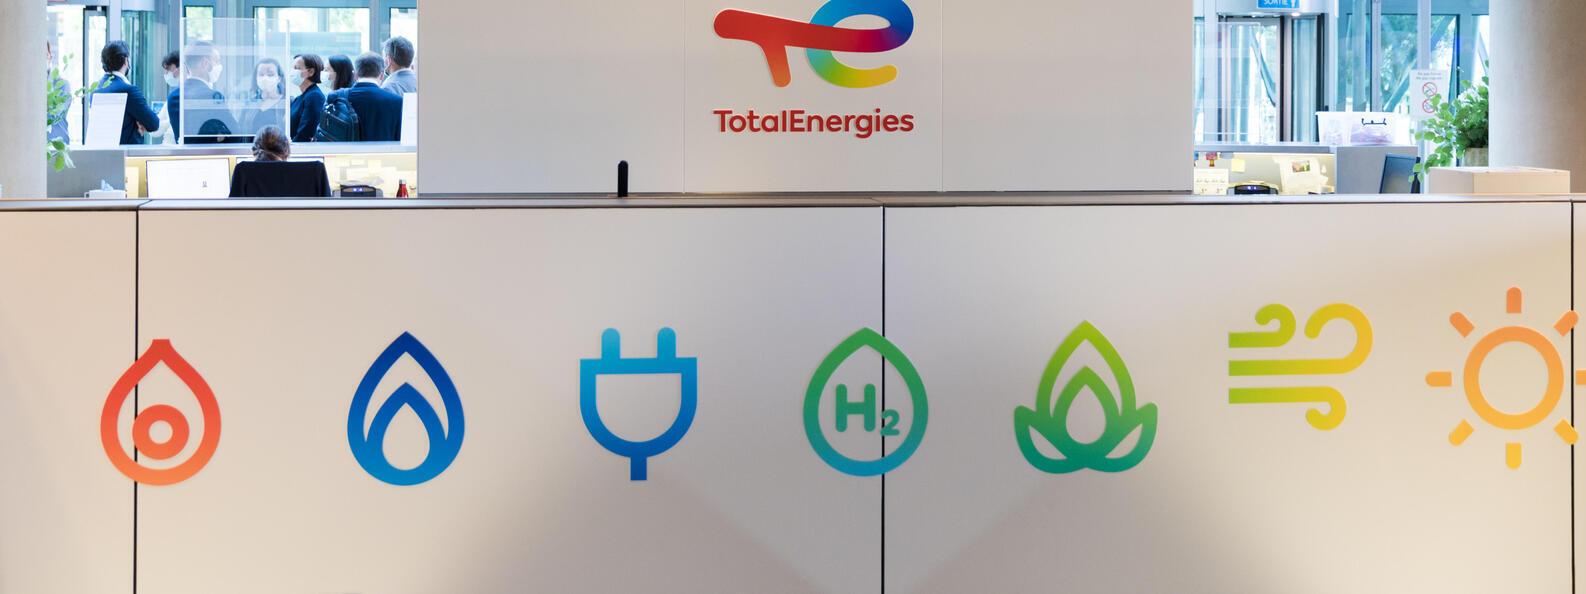 TotalEnergies’ headquarters at La Défense, Paris, France